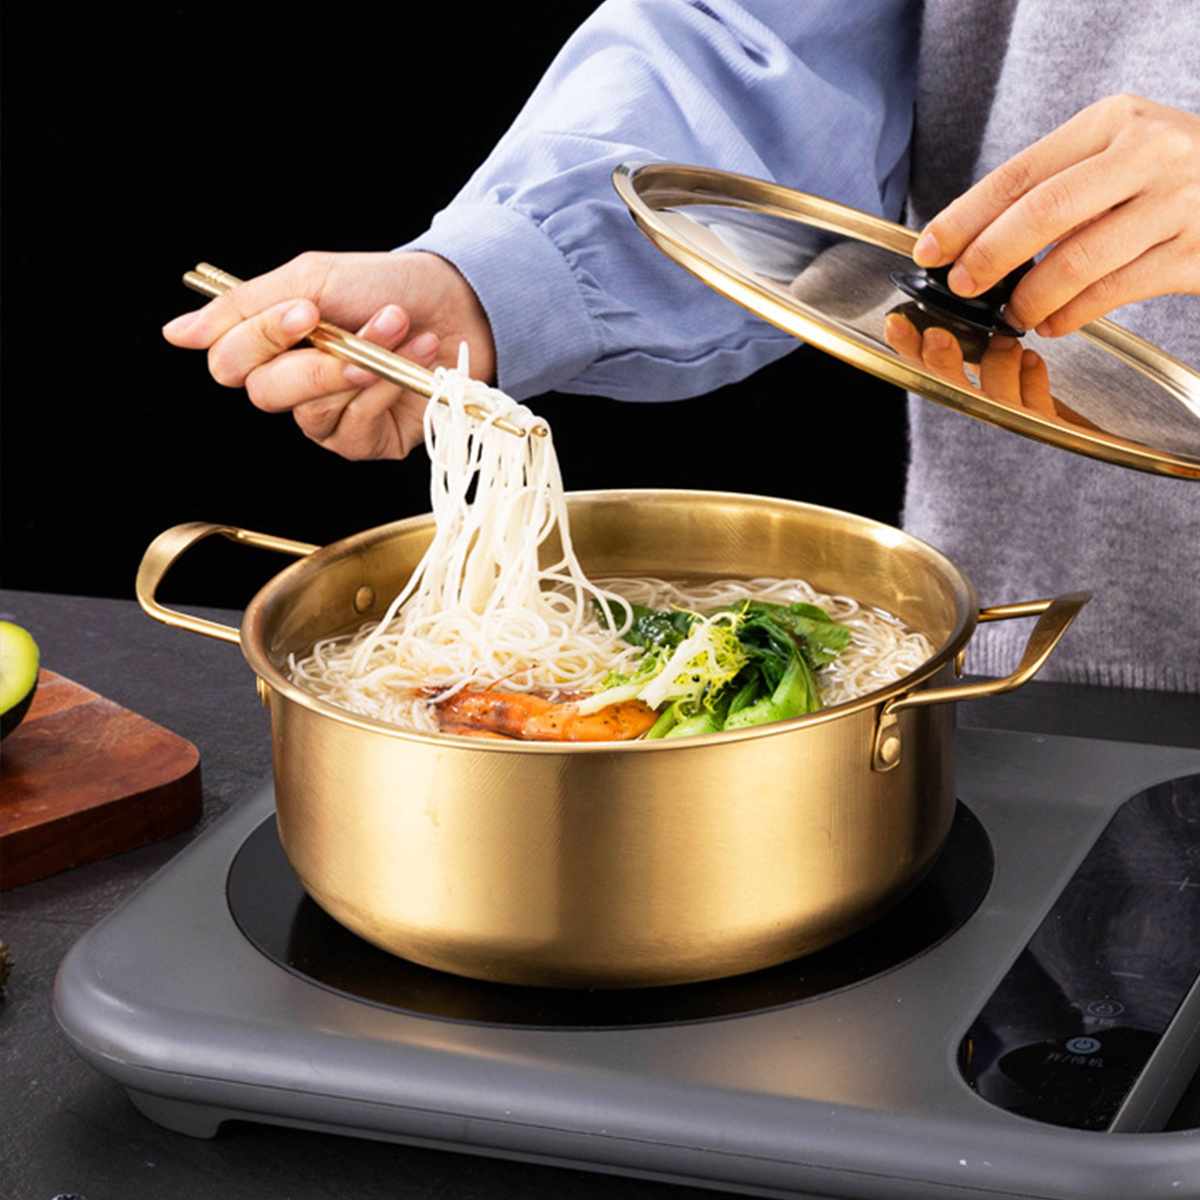 1PC pots Small Saucepan Korean Ramen Pot Stainless Steel Cookware